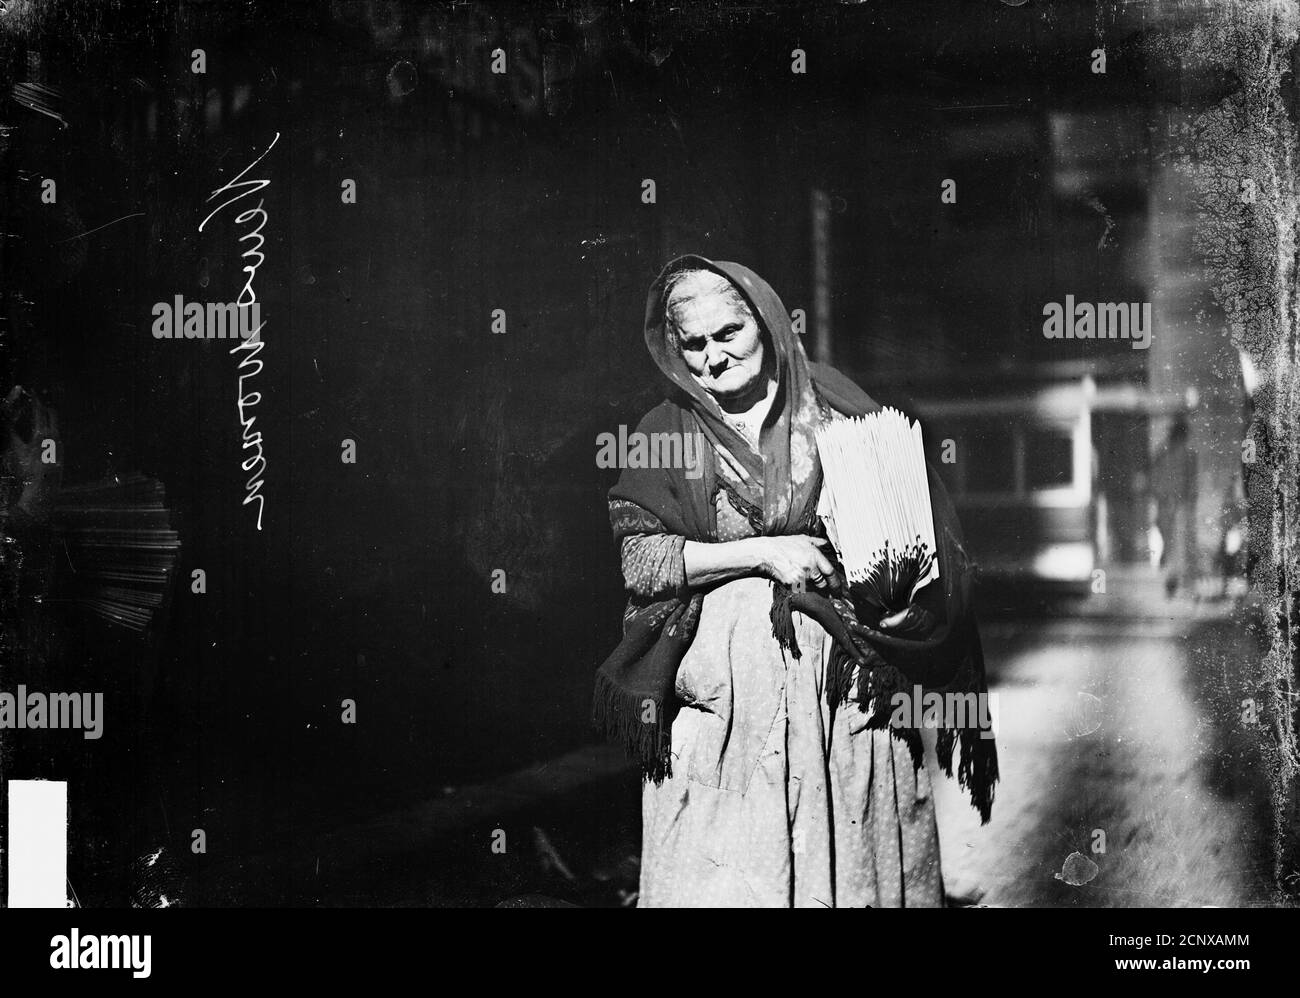 Immagine di una donna anziana che indossa uno scialle e porta giornali  sotto il braccio, camminando su una strada a Chicago, Illinois, circa 1905  Foto stock - Alamy